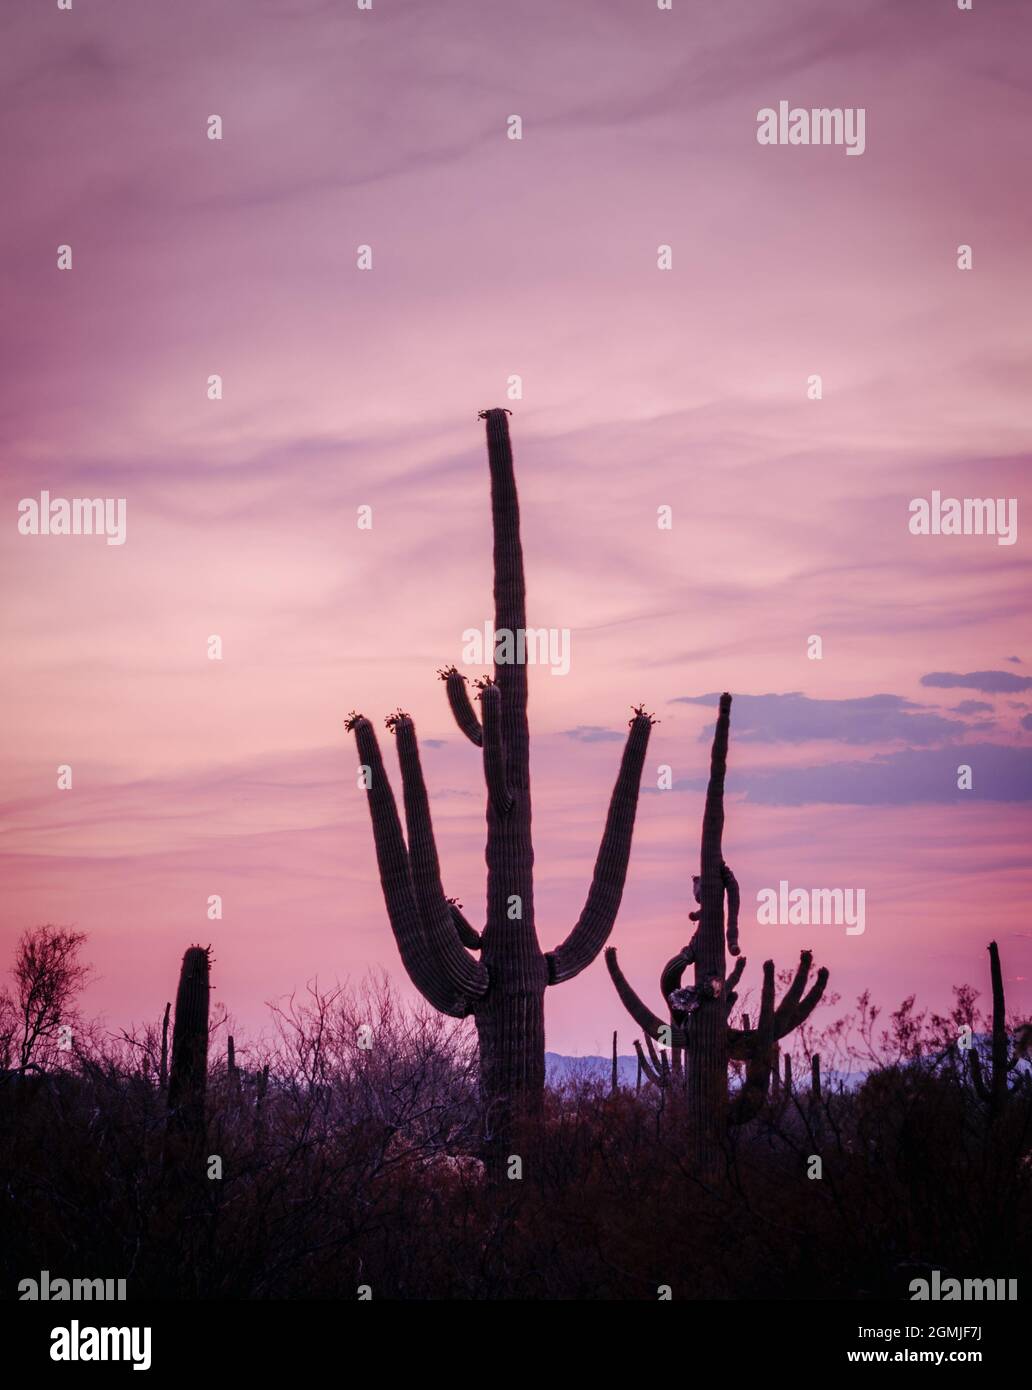 Cactus silhouettes Saguaro dans le désert de Sonoran, Arizona avec ciel violet au crépuscule Banque D'Images